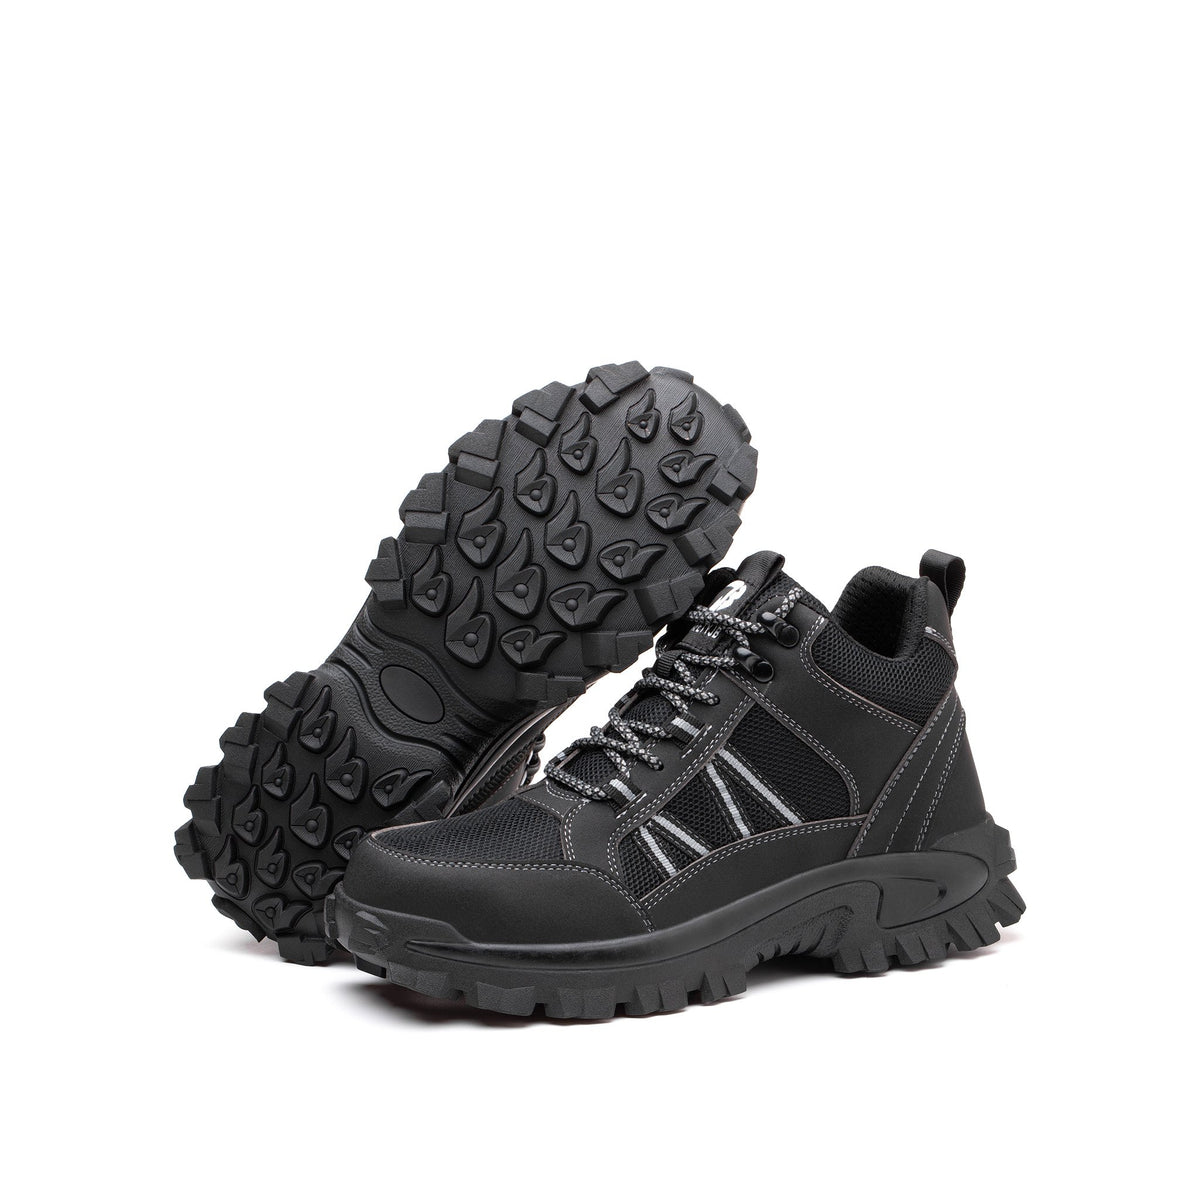 Fable Black - Indestructible Shoes